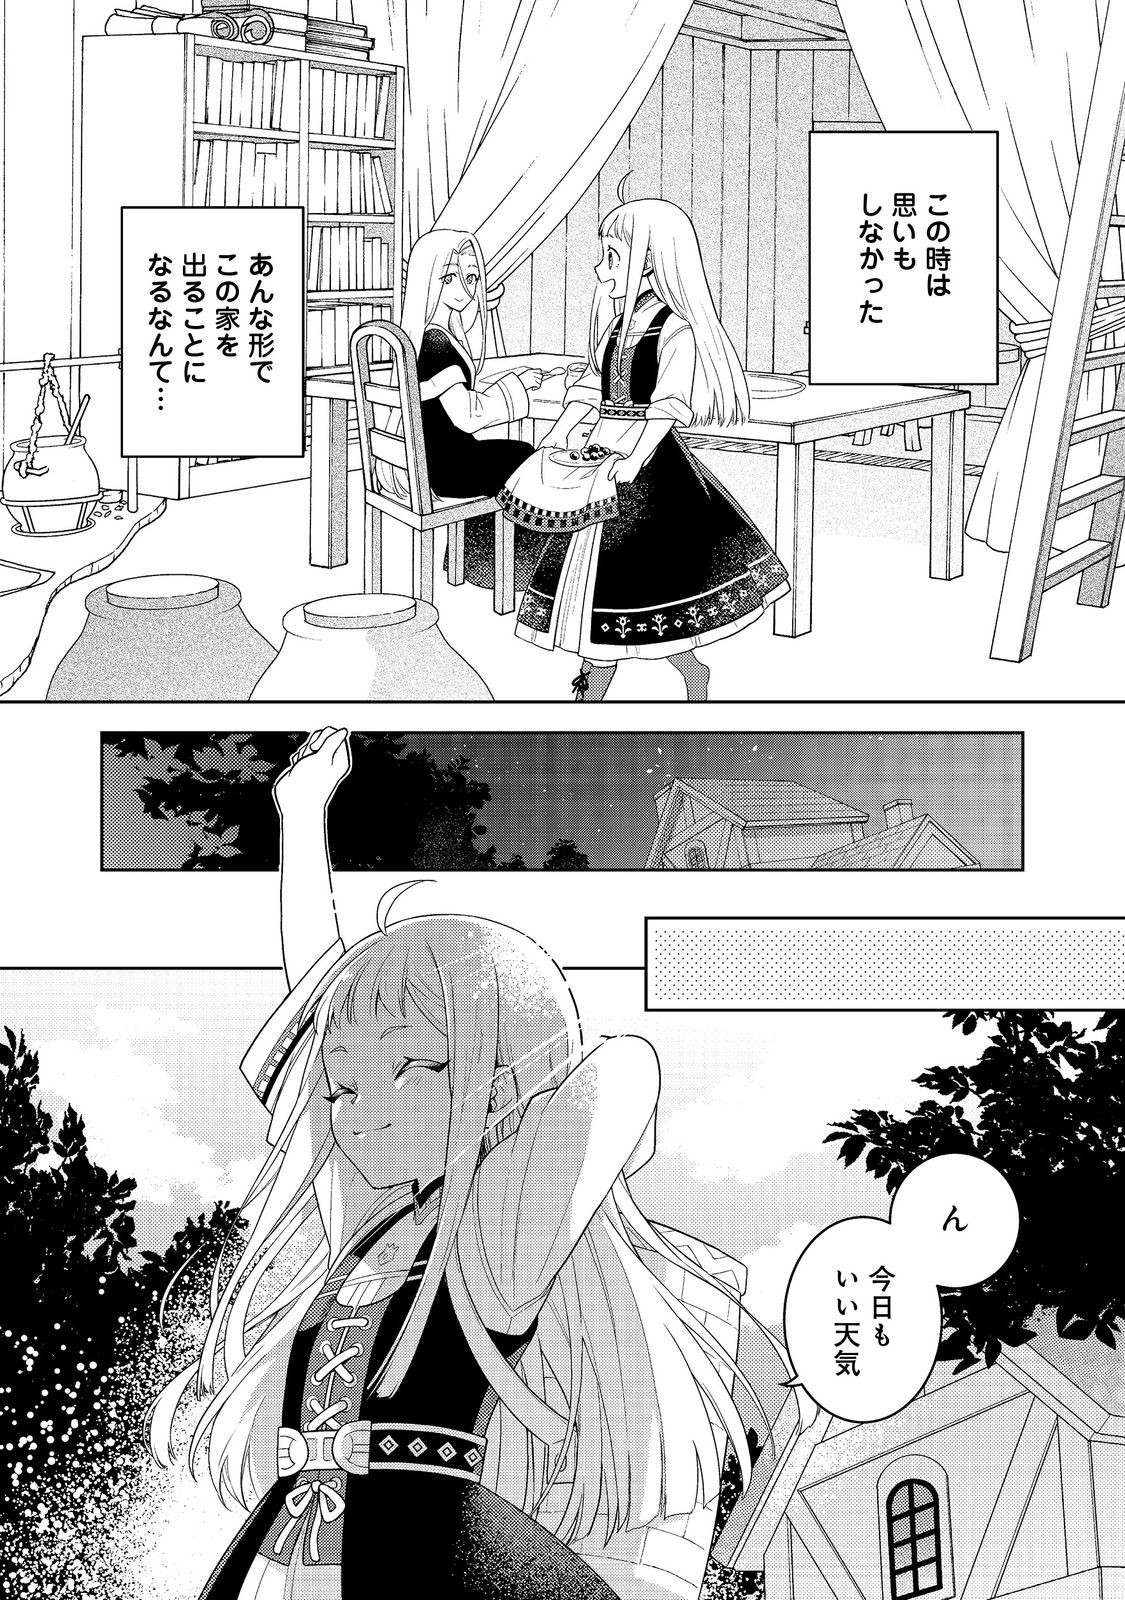 Mori no Hashikko no Chibi Majo-san - Chapter 1 - Page 17